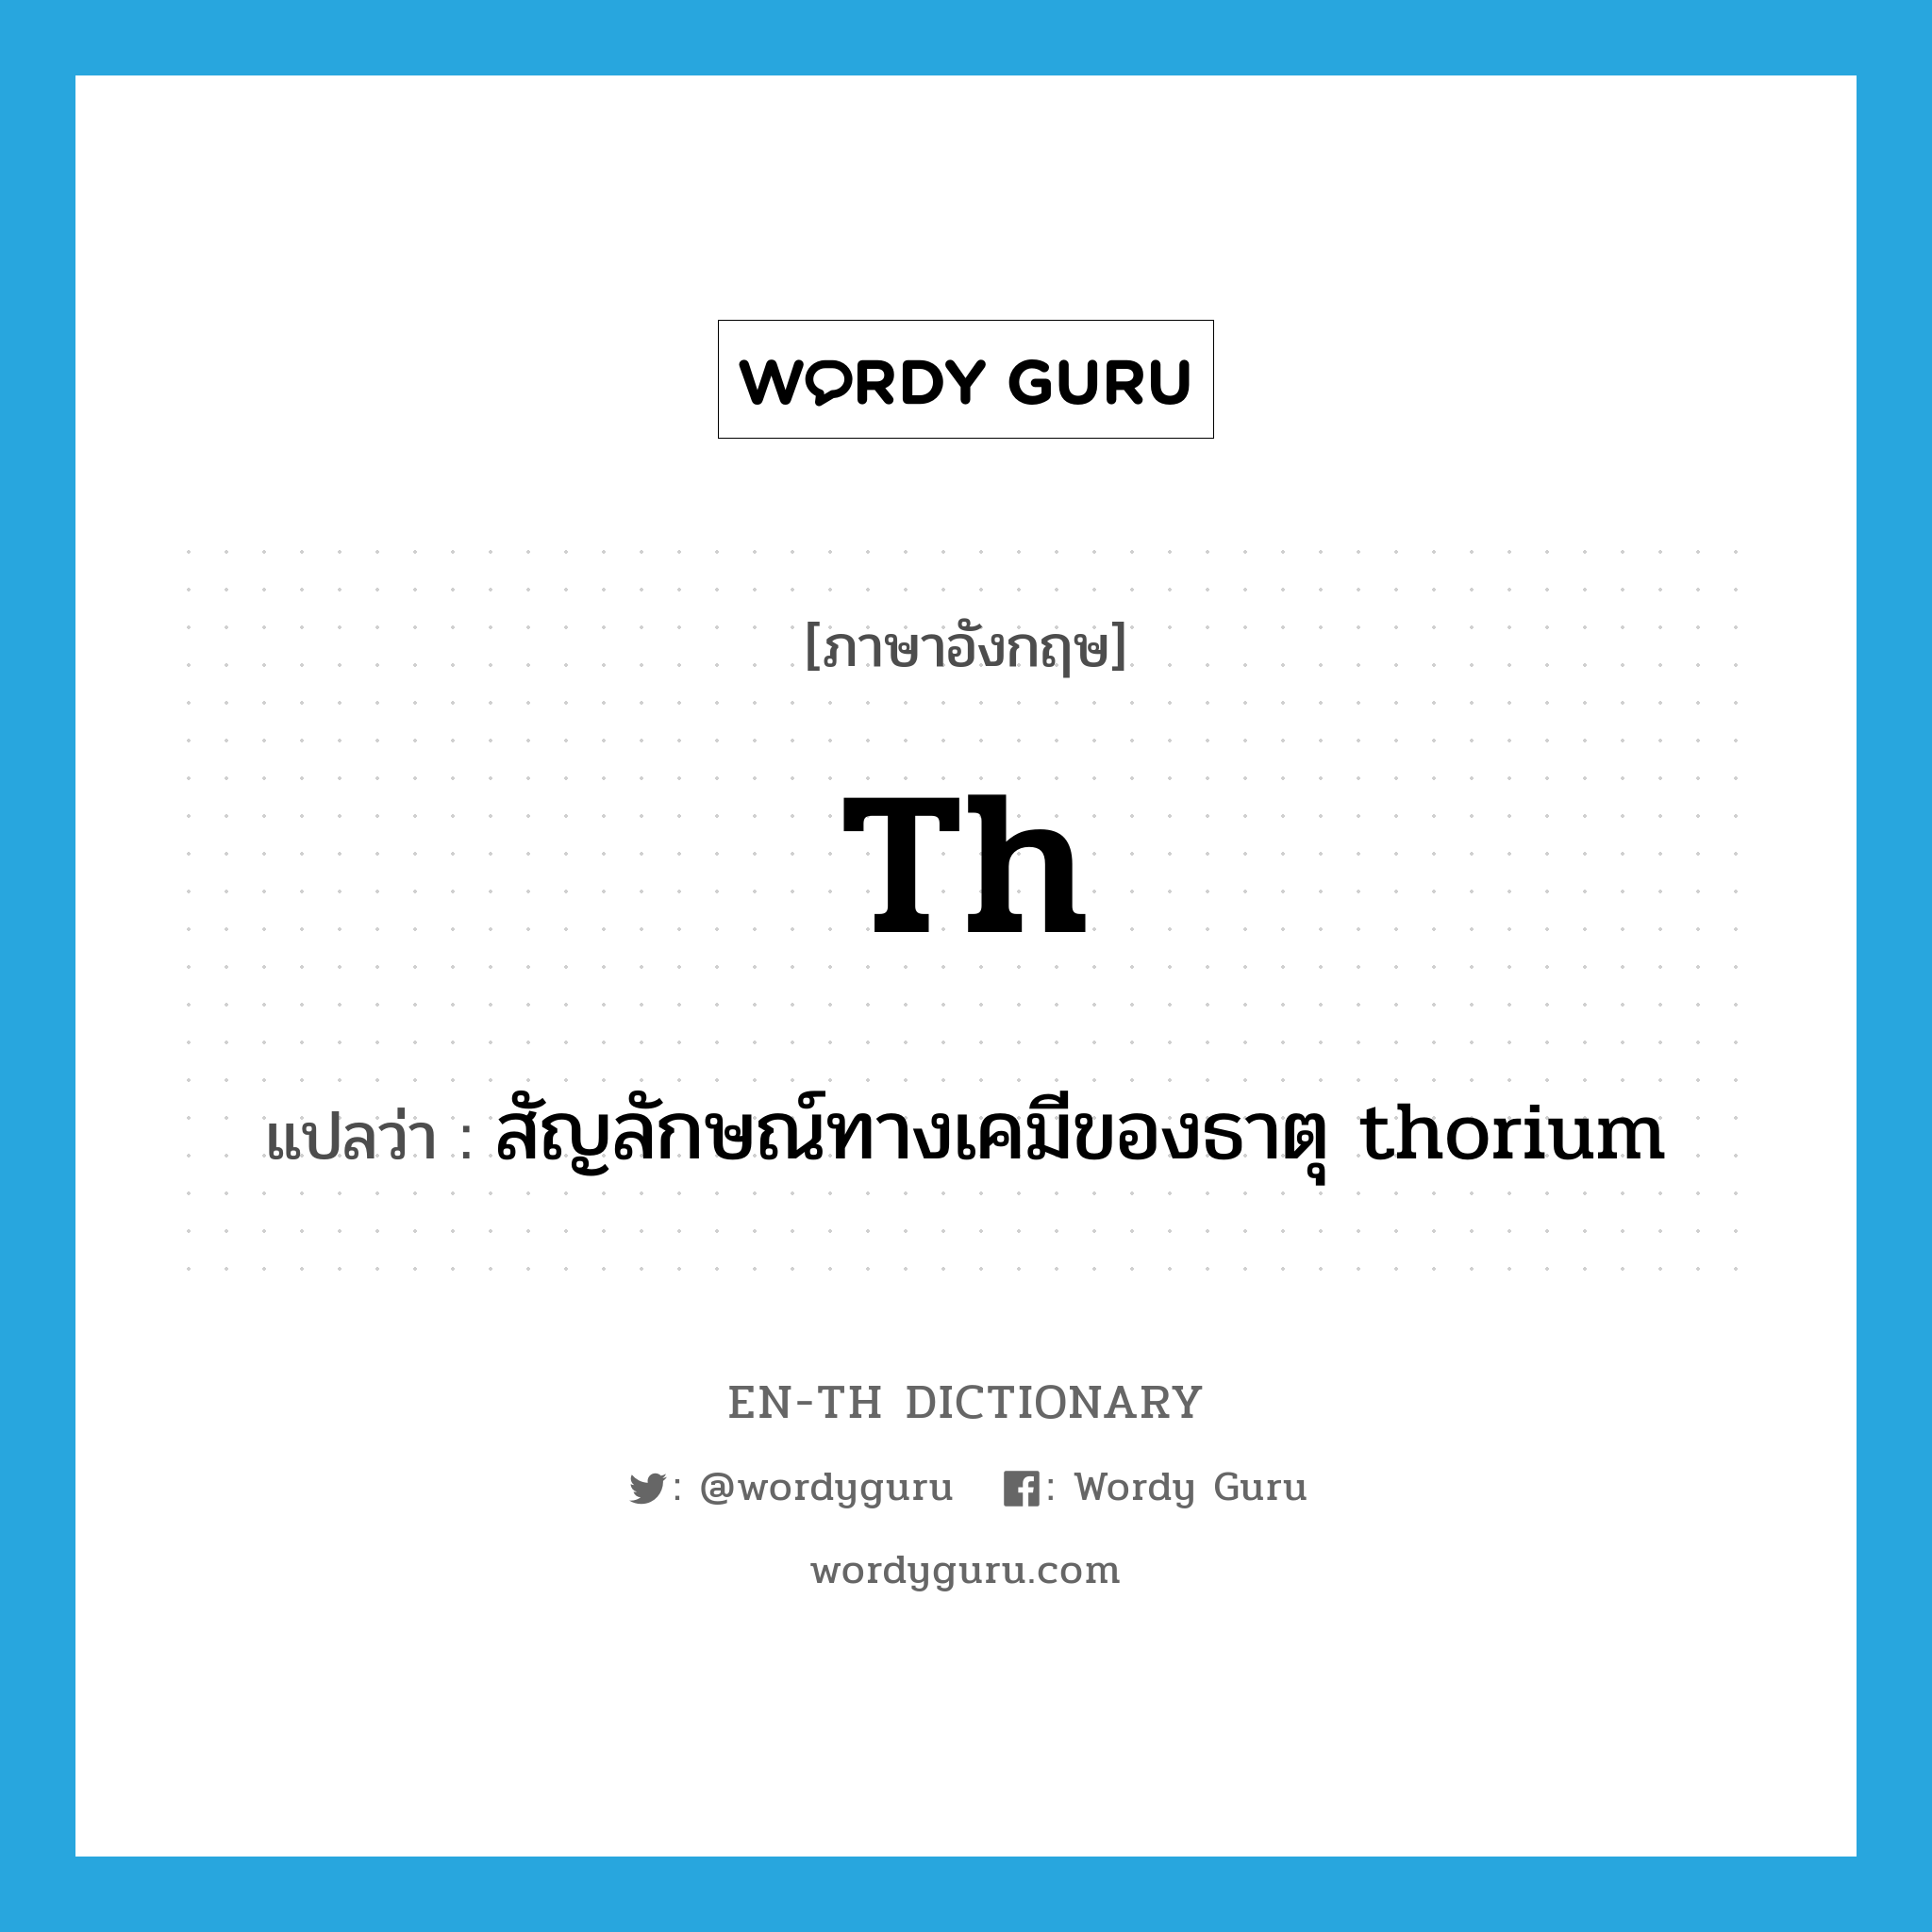 สัญลักษณ์ทางเคมีของธาตุ thorium ภาษาอังกฤษ?, คำศัพท์ภาษาอังกฤษ สัญลักษณ์ทางเคมีของธาตุ thorium แปลว่า Th ประเภท N หมวด N